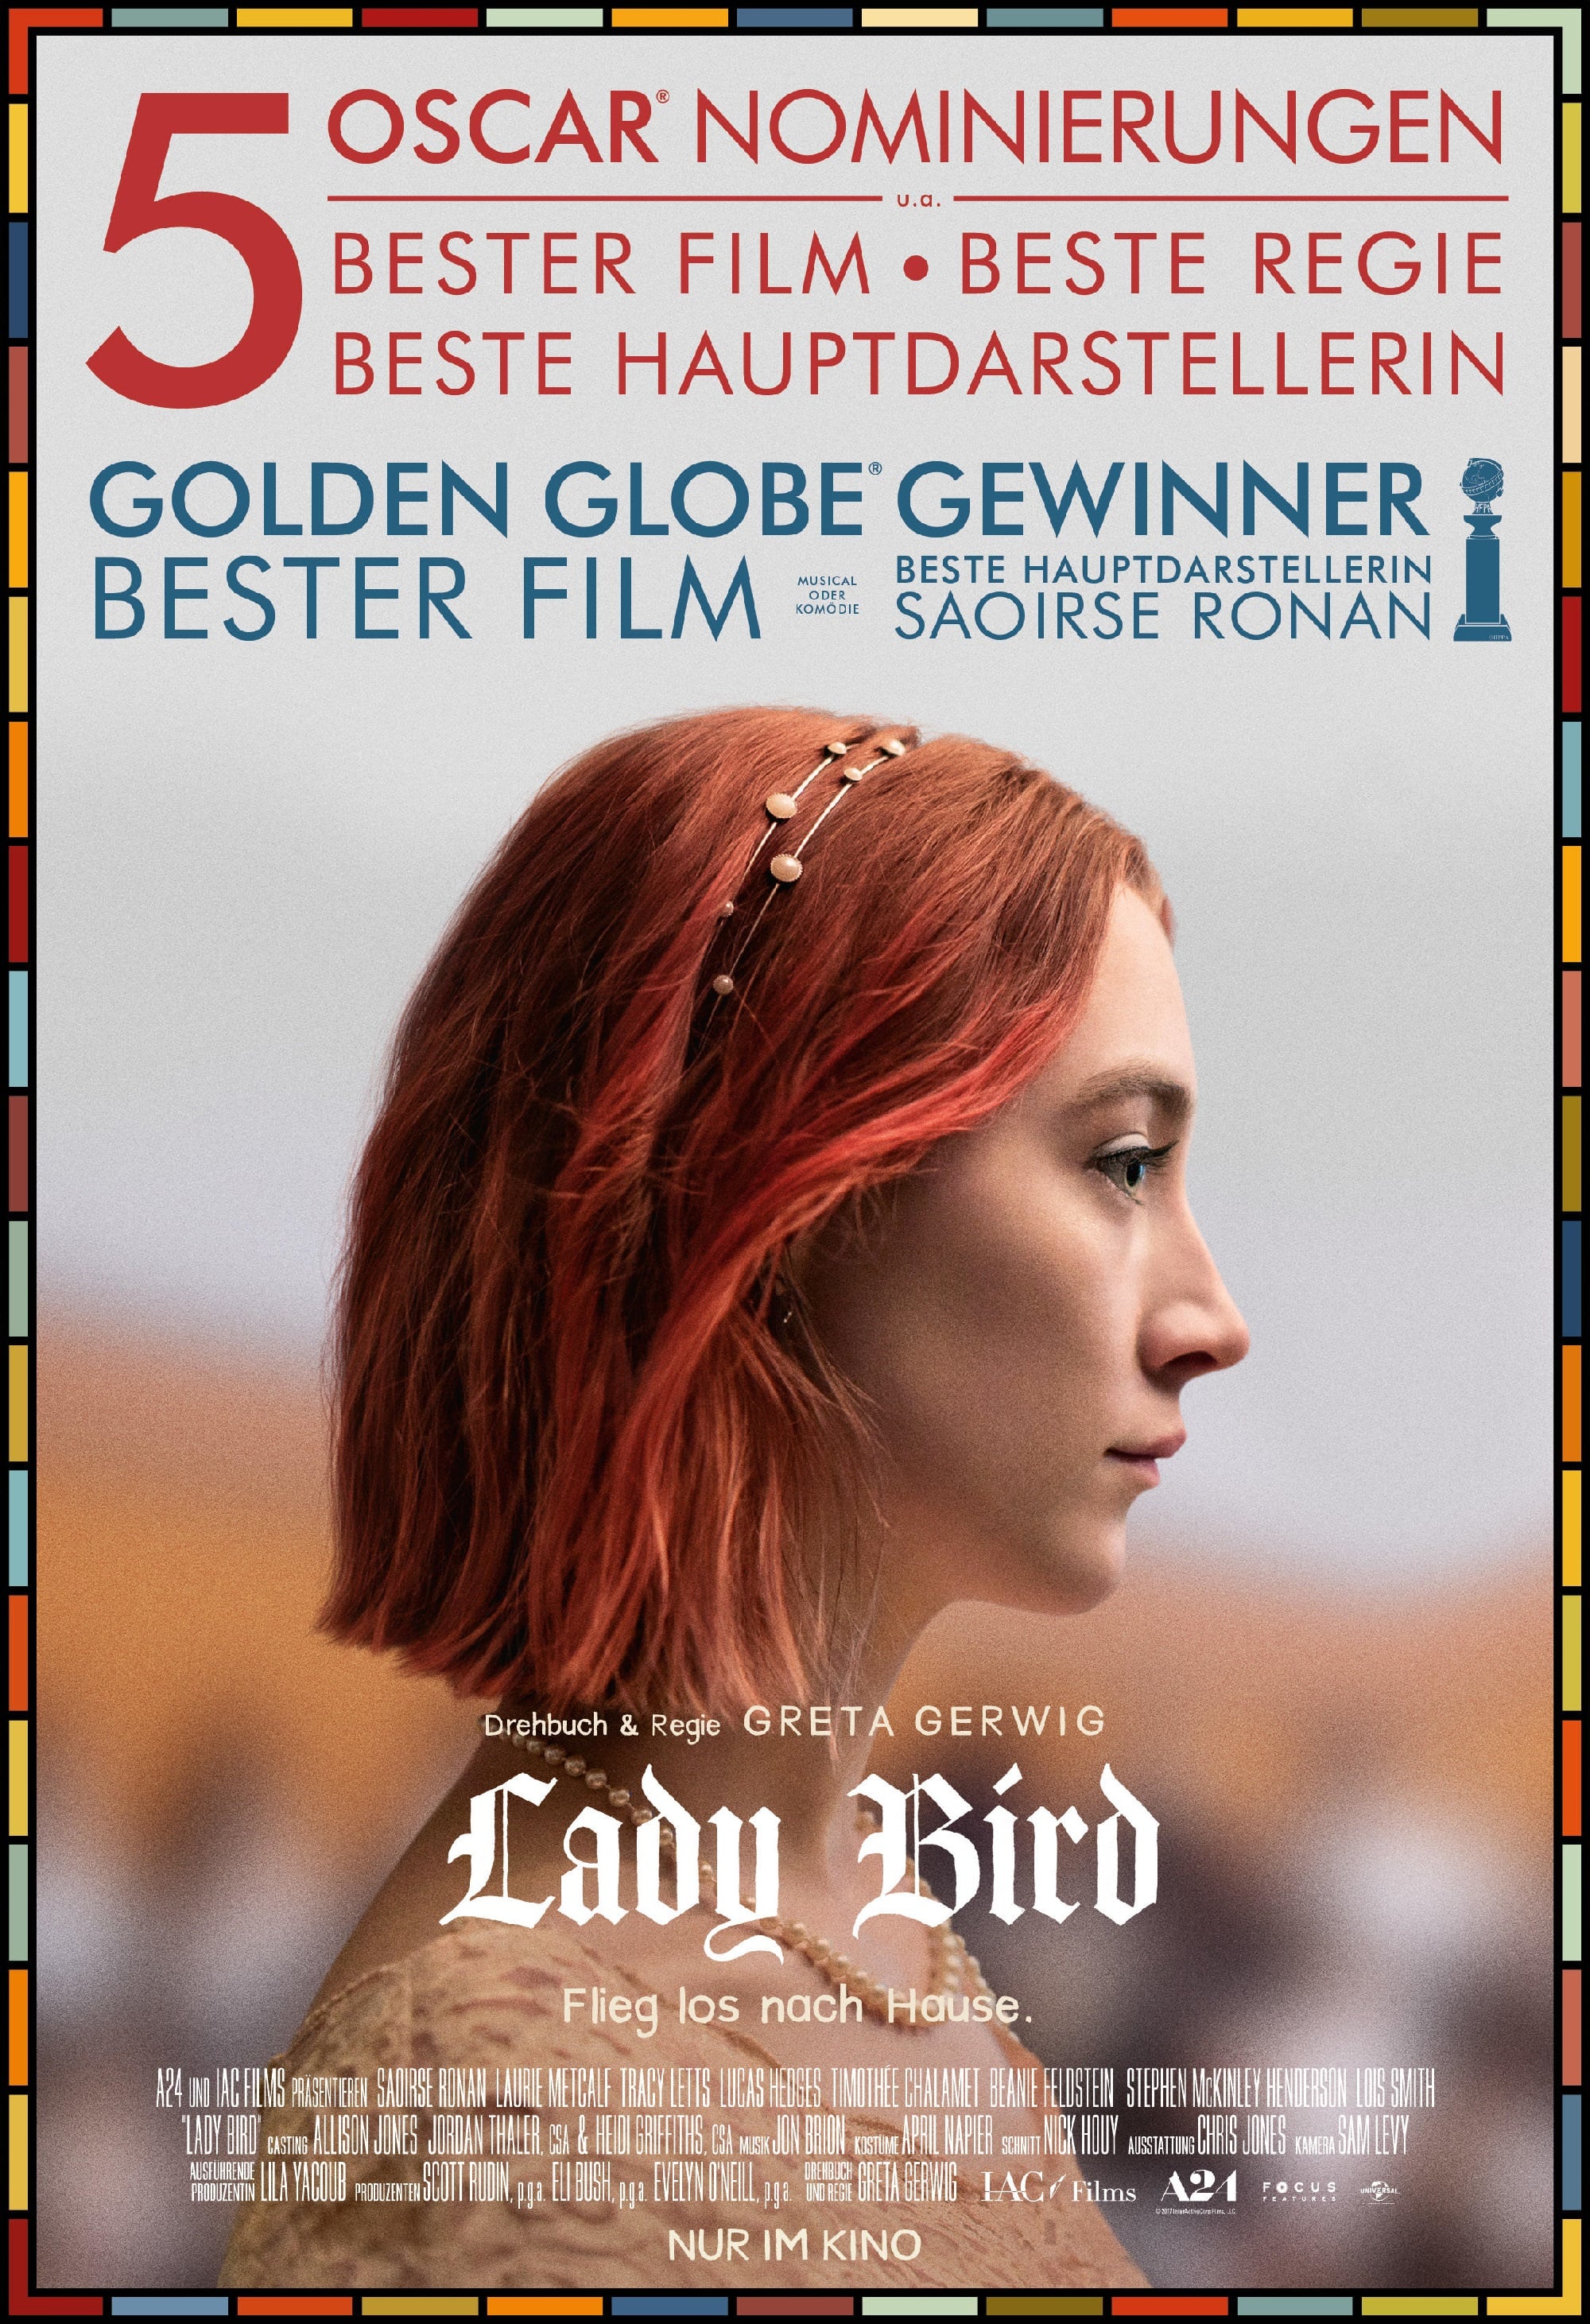 Plakat von "Lady Bird"